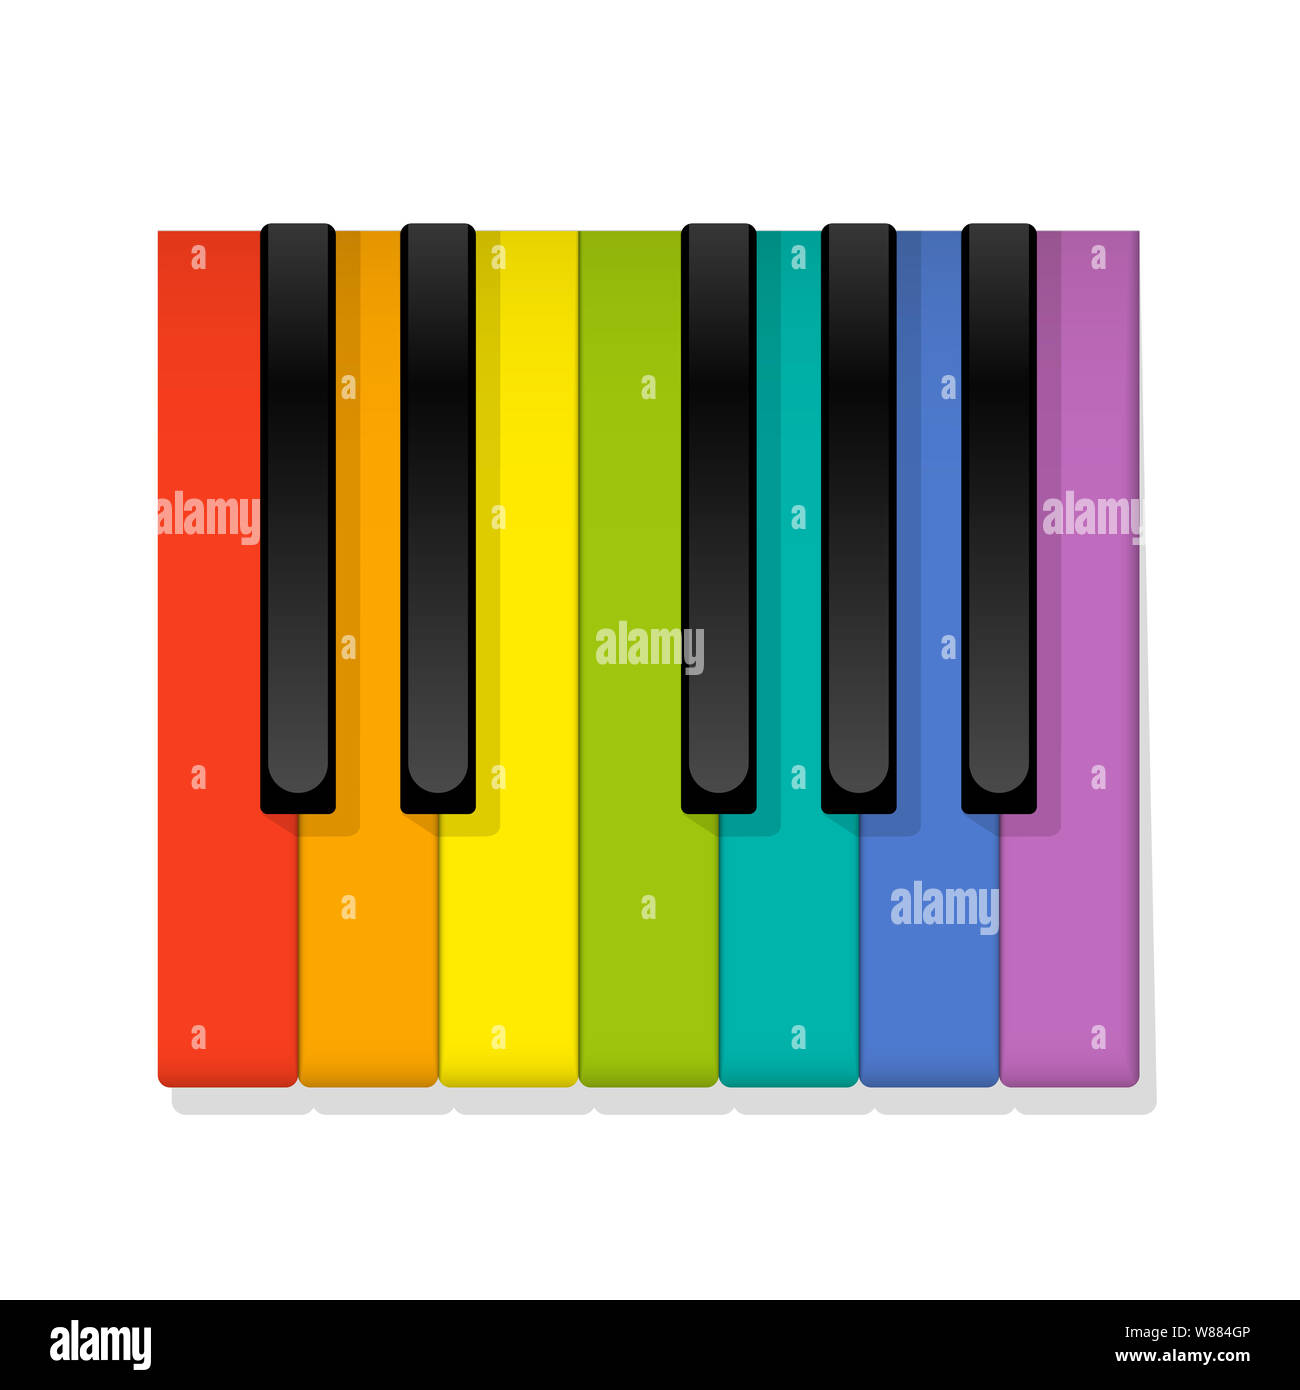 Bunte piano die Oktavlage der Tastatur mit farbigen statt der weißen Tasten zu spielen, symbolisch für Spaß und Freude beim Lernen und Spielen auf der Klavier. Stockfoto